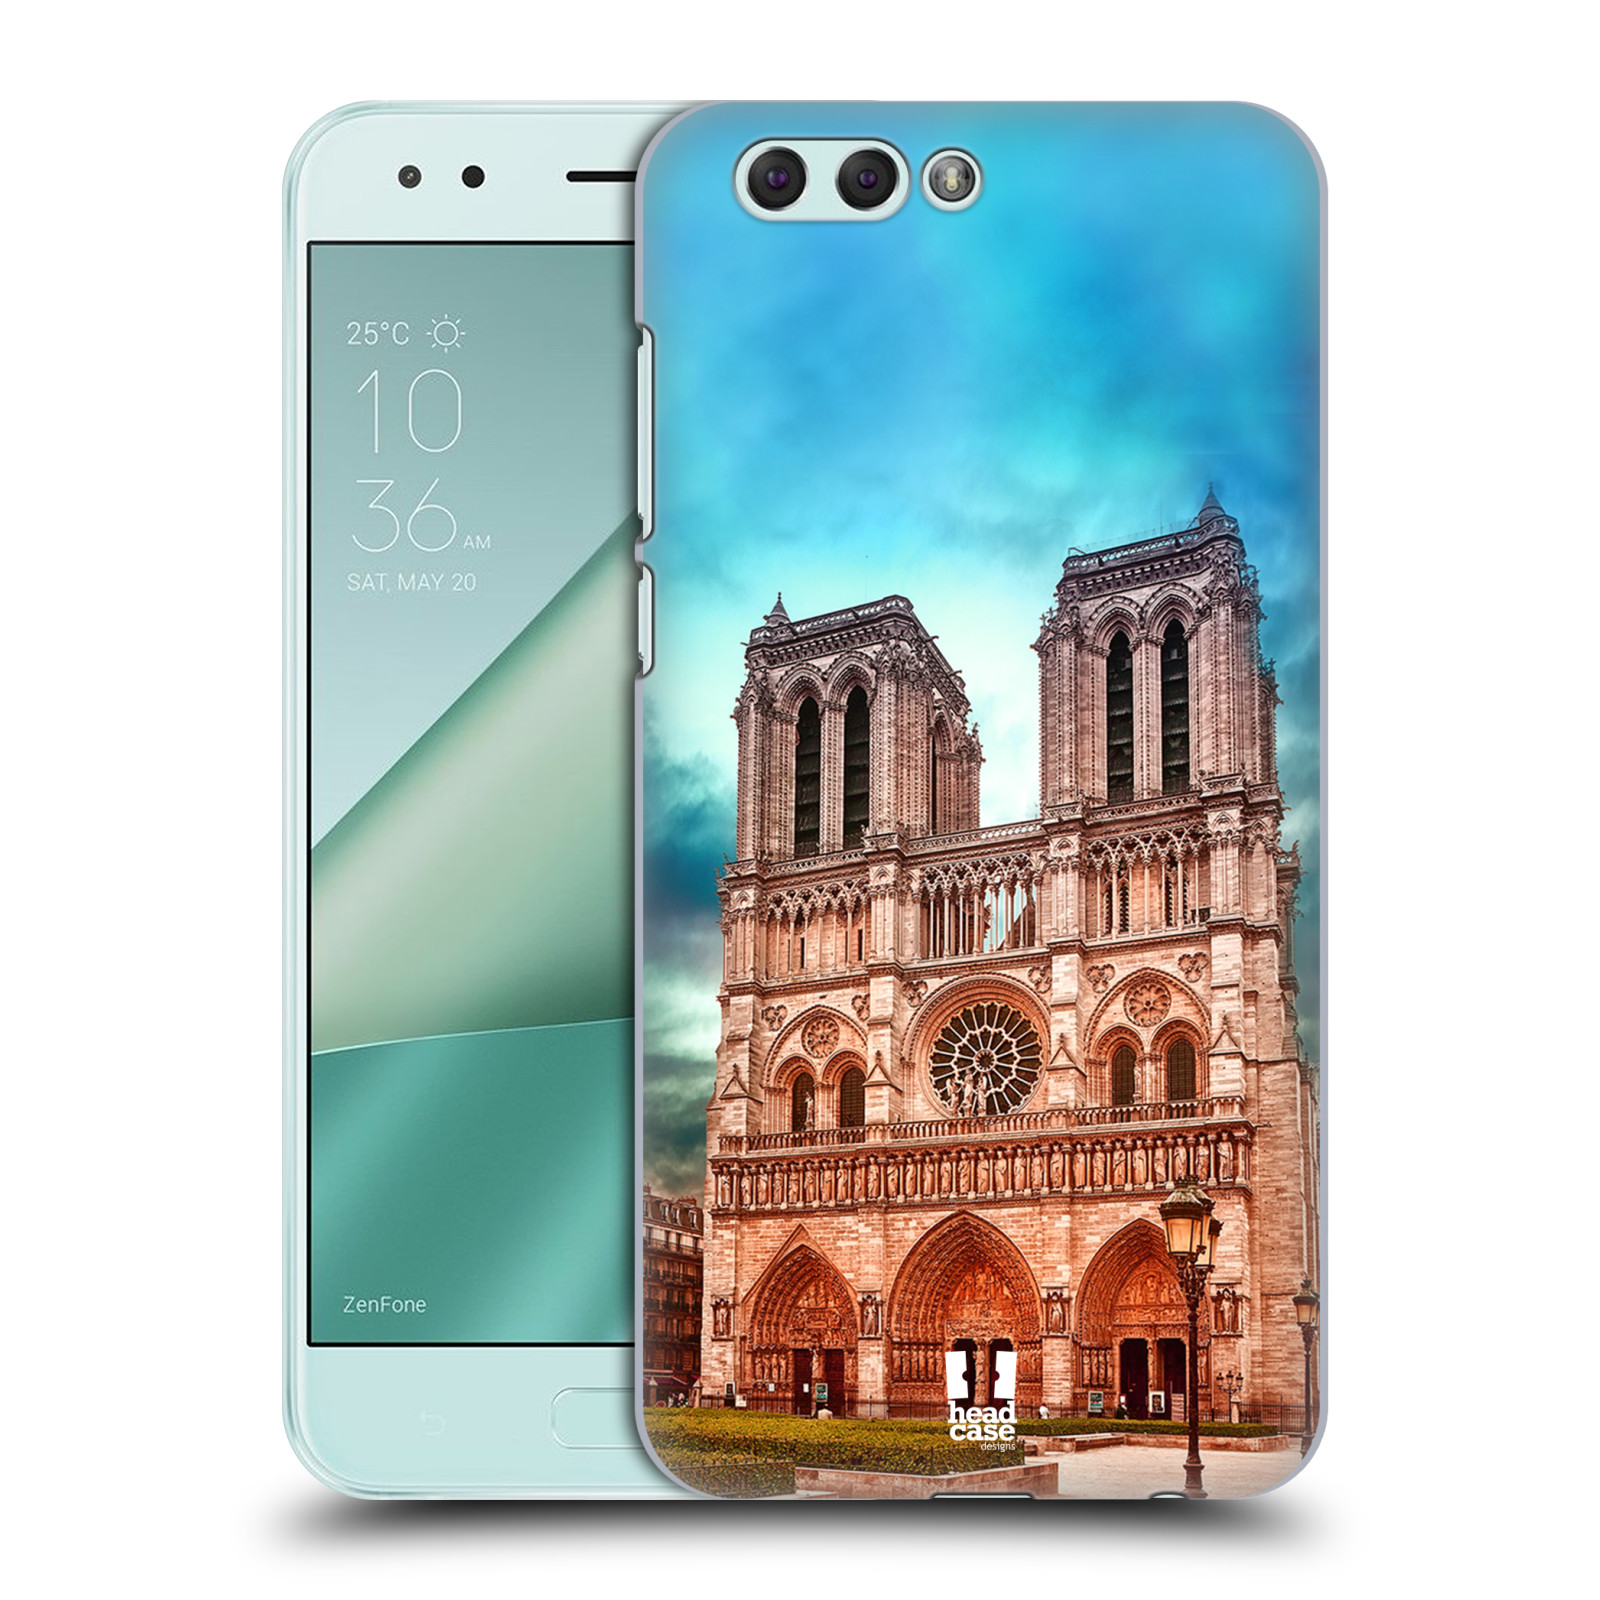 Pouzdro na mobil ASUS ZENFONE 4 ZE554KL - HEAD CASE - historická místa katedrála Notre Dame